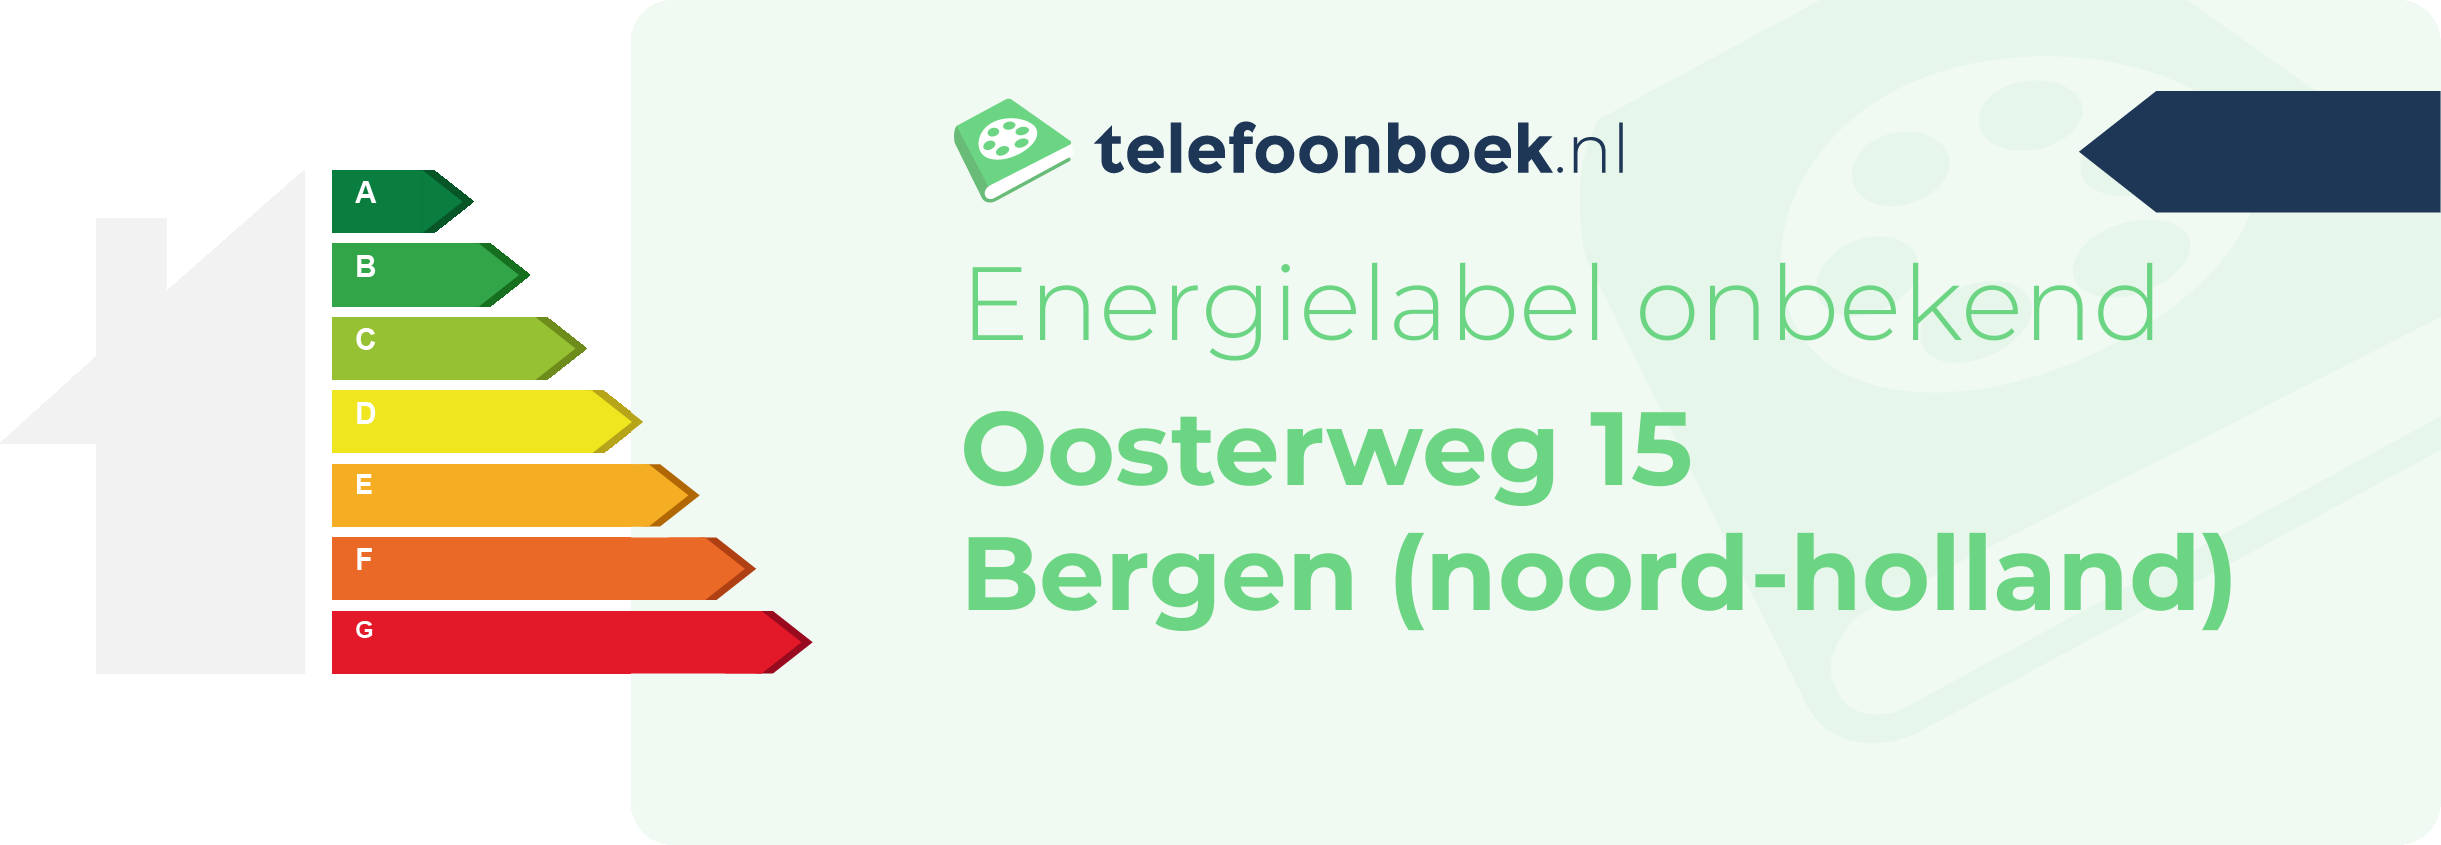 Energielabel Oosterweg 15 Bergen (Noord-Holland)